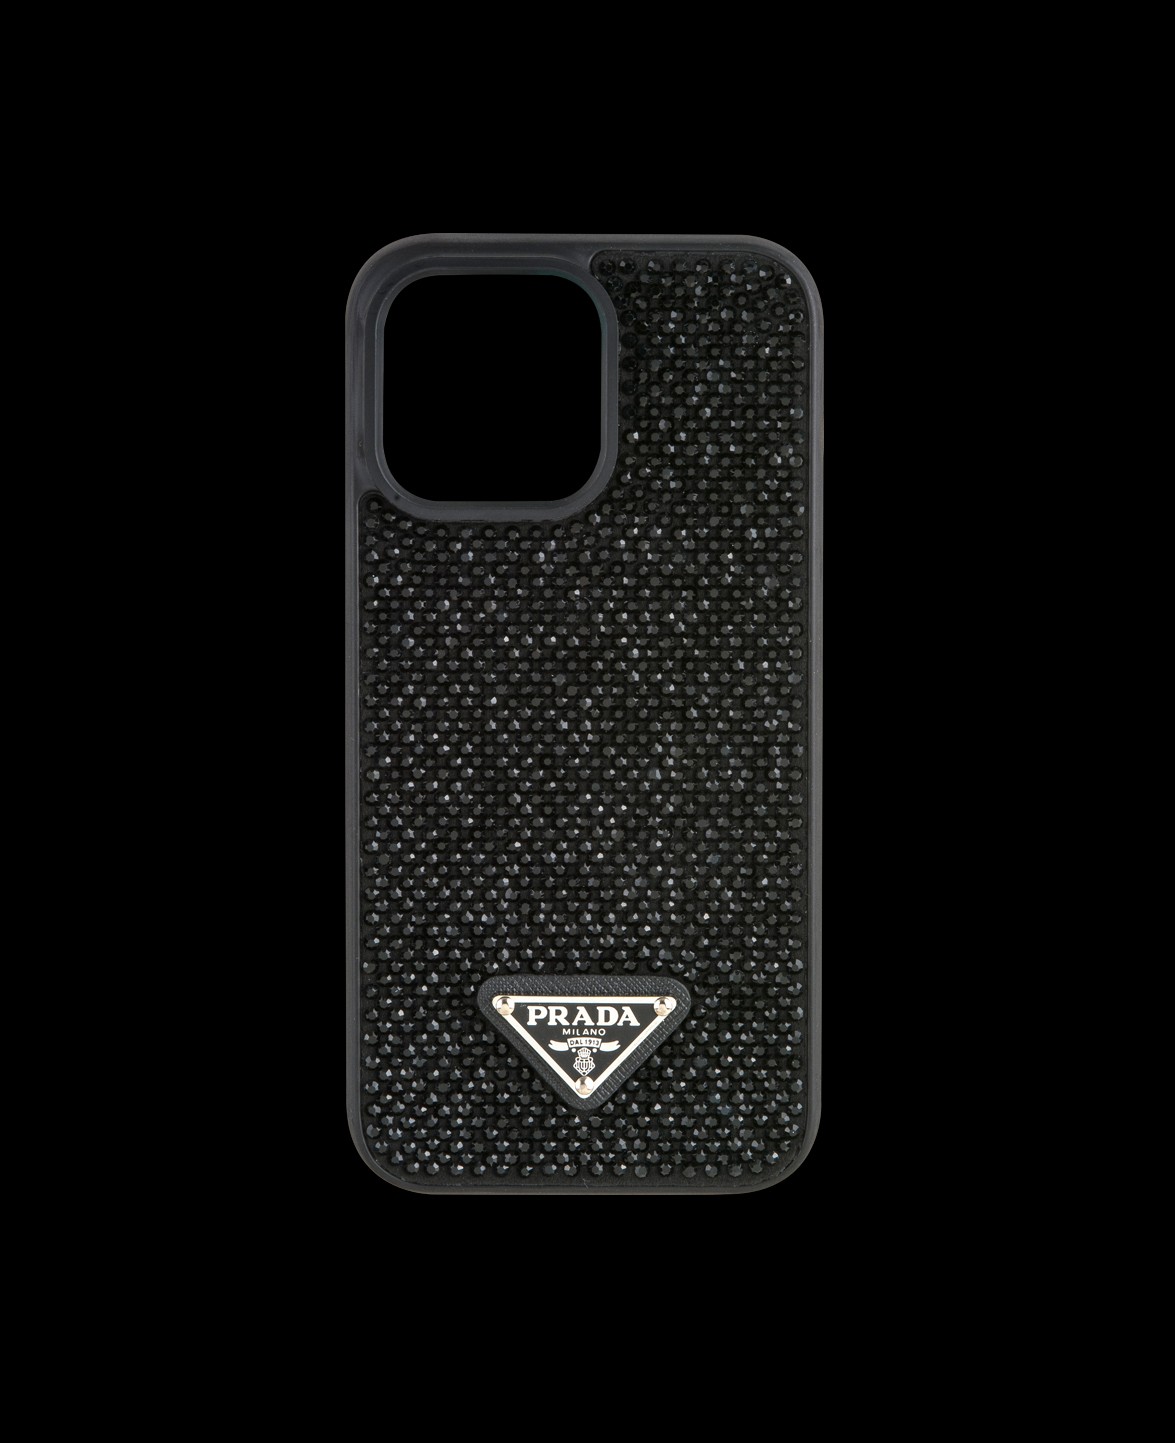 Siyah Taşlı Telefon Kılıfı - DK007 - iPhone 11